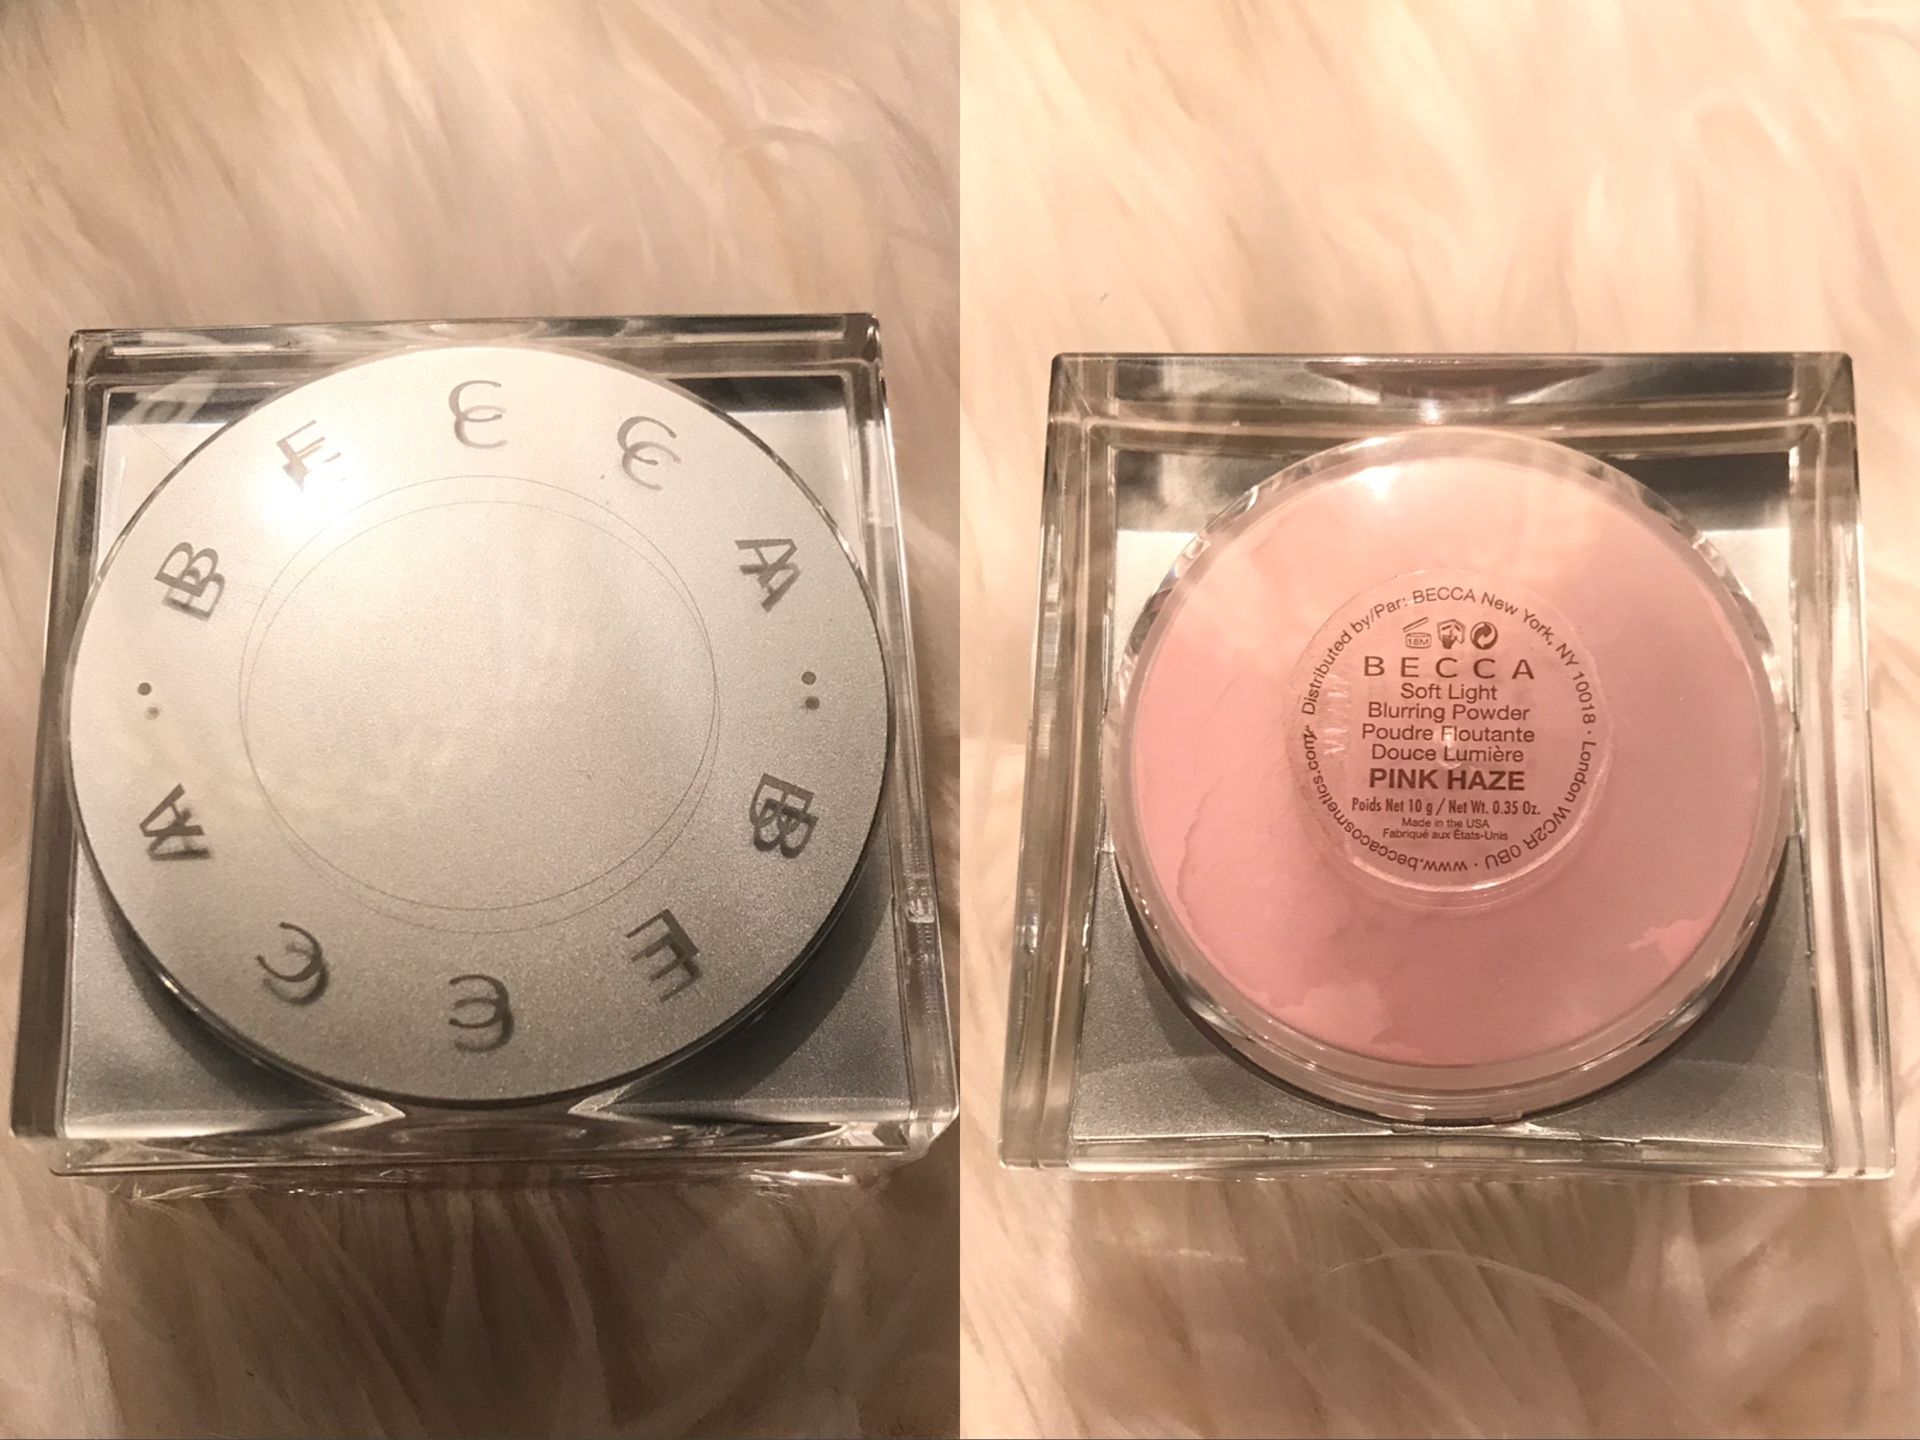 New BECCA Soft Light Blurring Powder ‘Pink Haze’ (sheer soft pink)